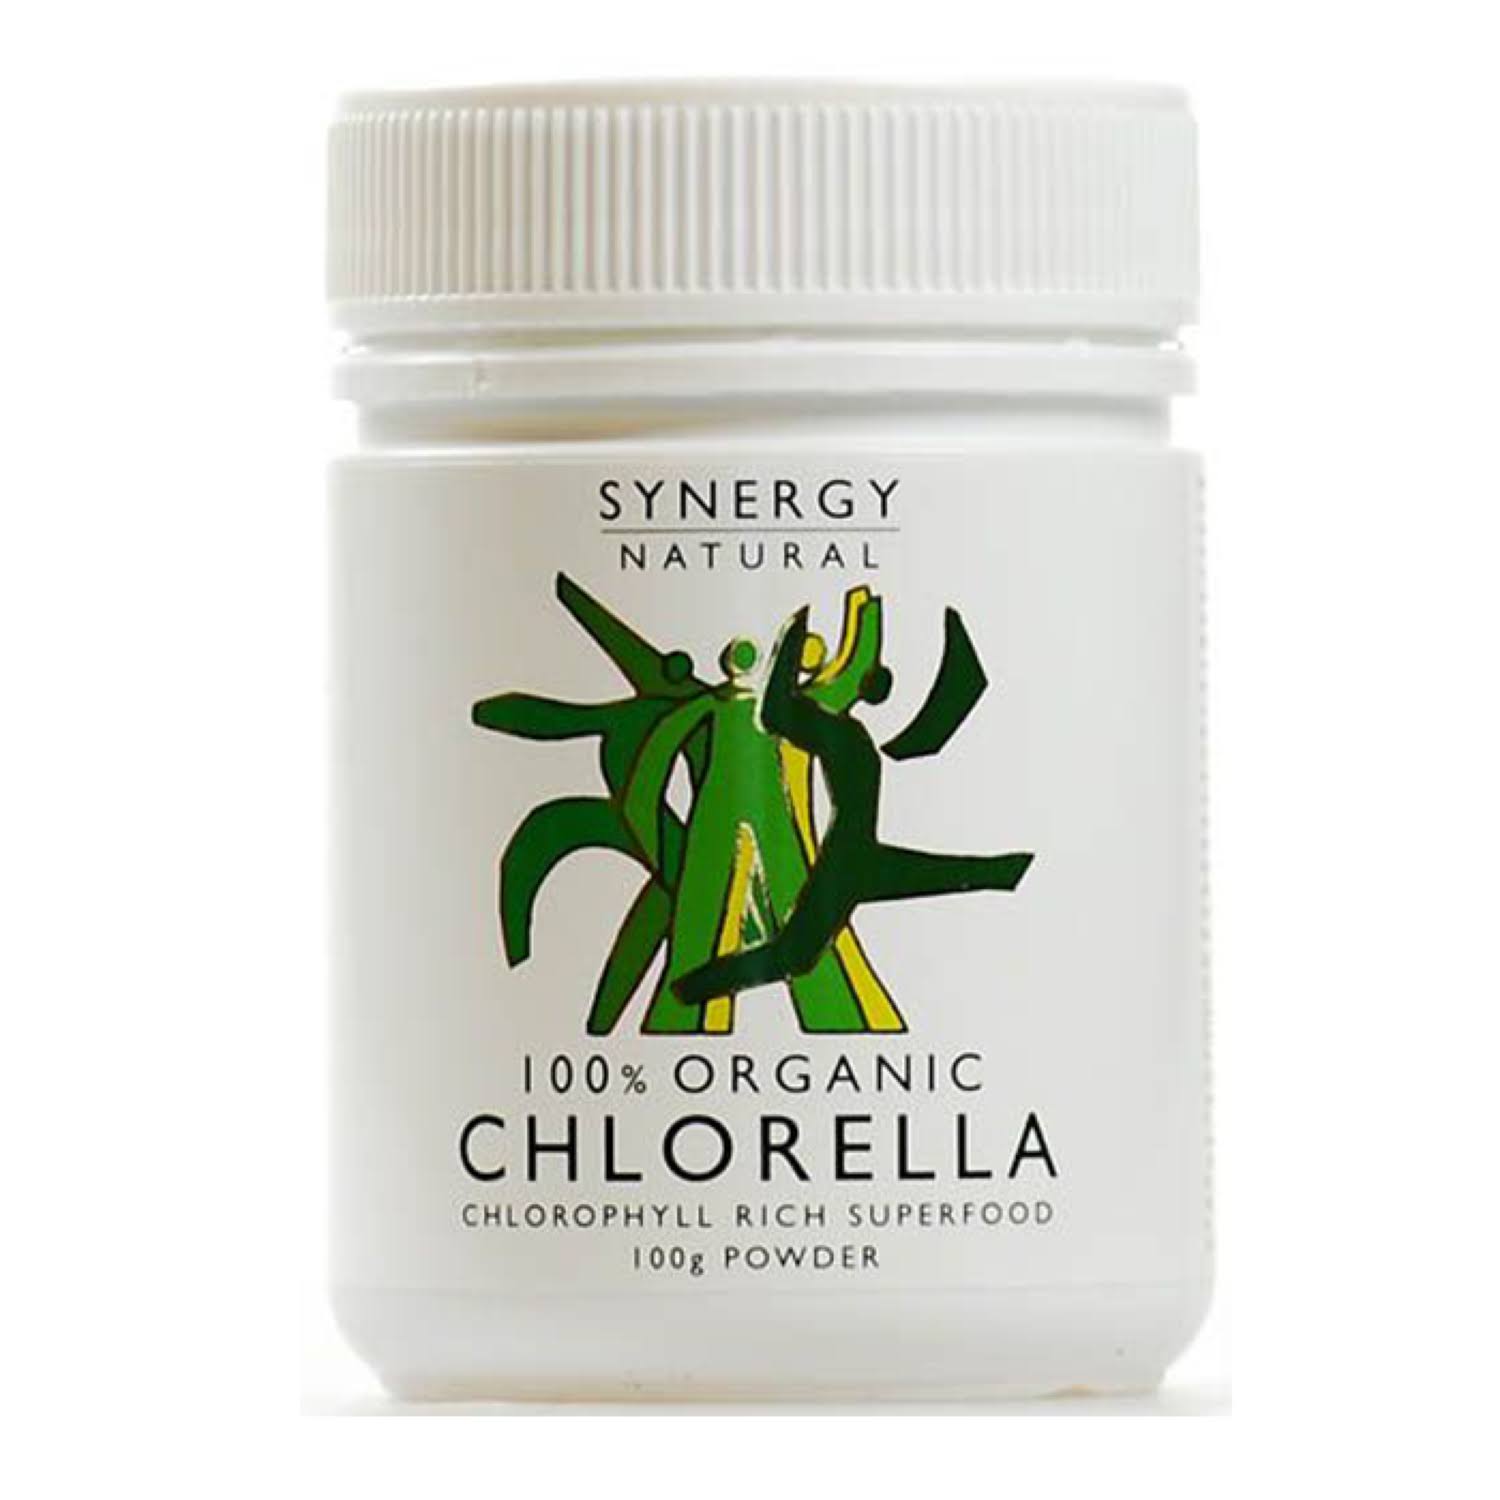 Synergy Organic Chlorella Powder - 100g